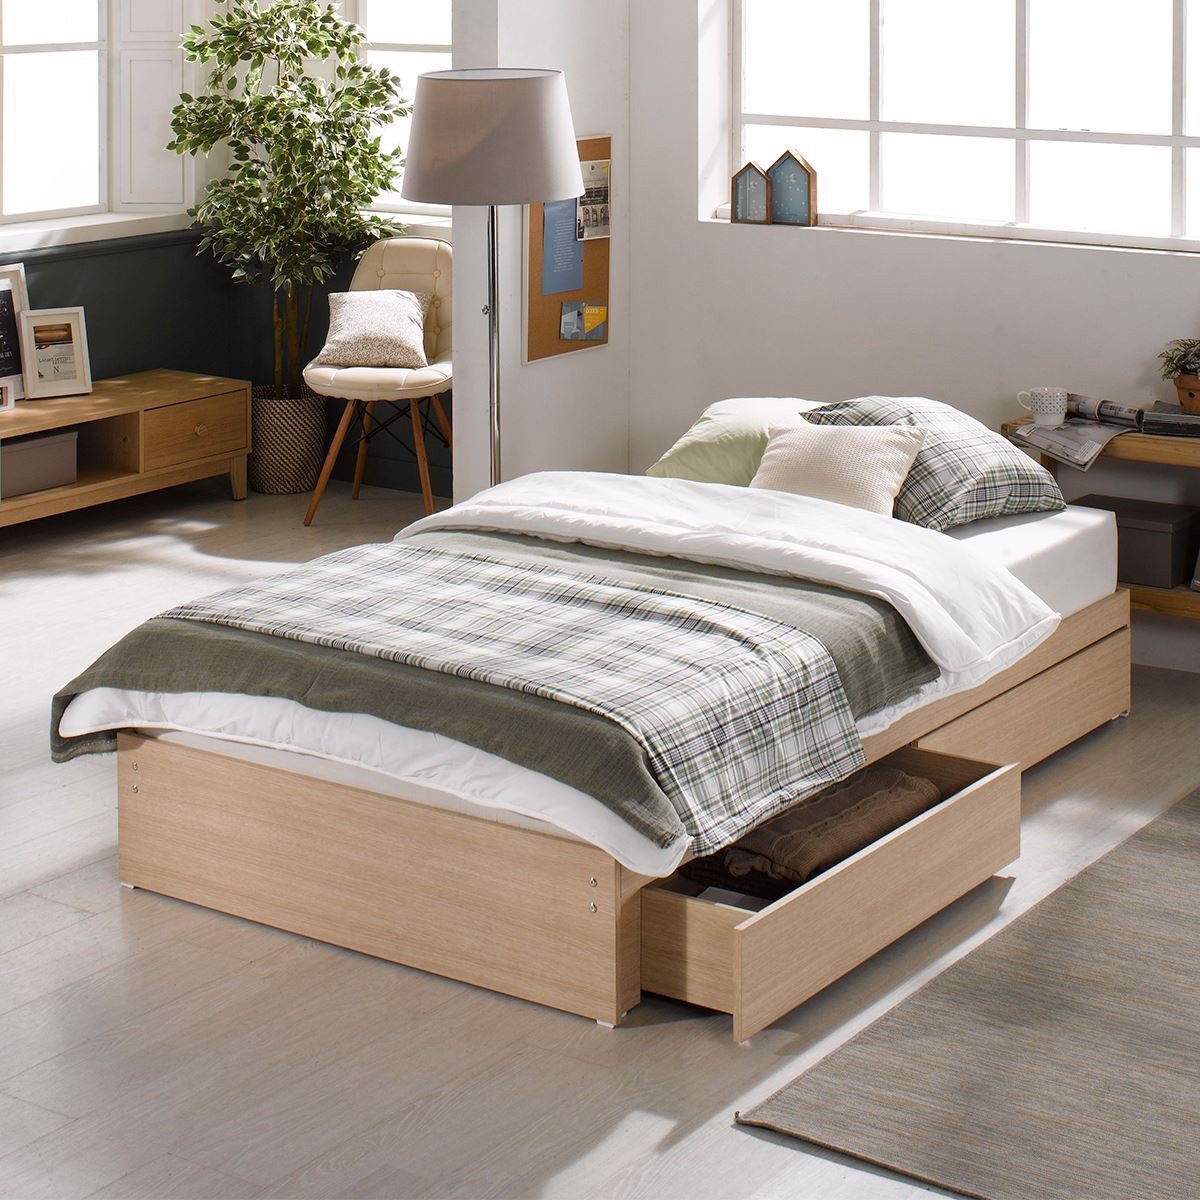 Giường đơn 1m2 năm 2024 là lựa chọn hoàn hảo cho không gian nhỏ hẹp của căn phòng ngủ. Với kích thước tiêu chuẩn, giường đơn 1m2 năm 2024 thỏa mãn tất cả các nhu cầu về cảm giác thoải mái và giấc ngủ ngon.